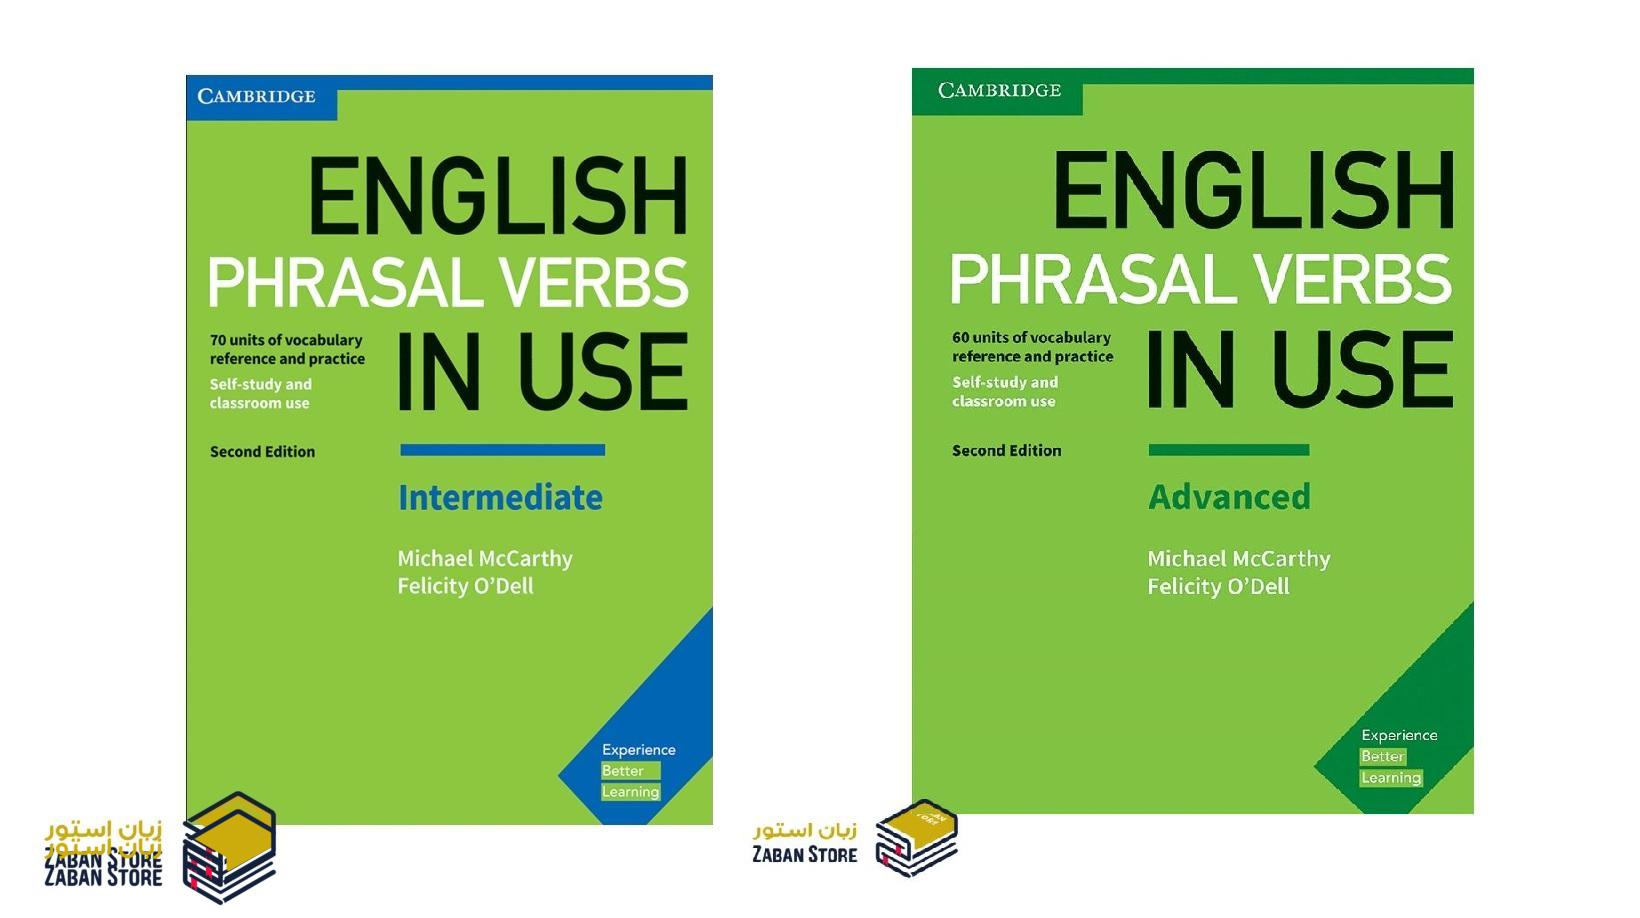 خرید کتاب زبان | فروشگاه اینترنتی کتاب زبان | English Phrasal Verbs In Use Second Edition | انگلیش فریزال وربز این یوز ویرایش دوم